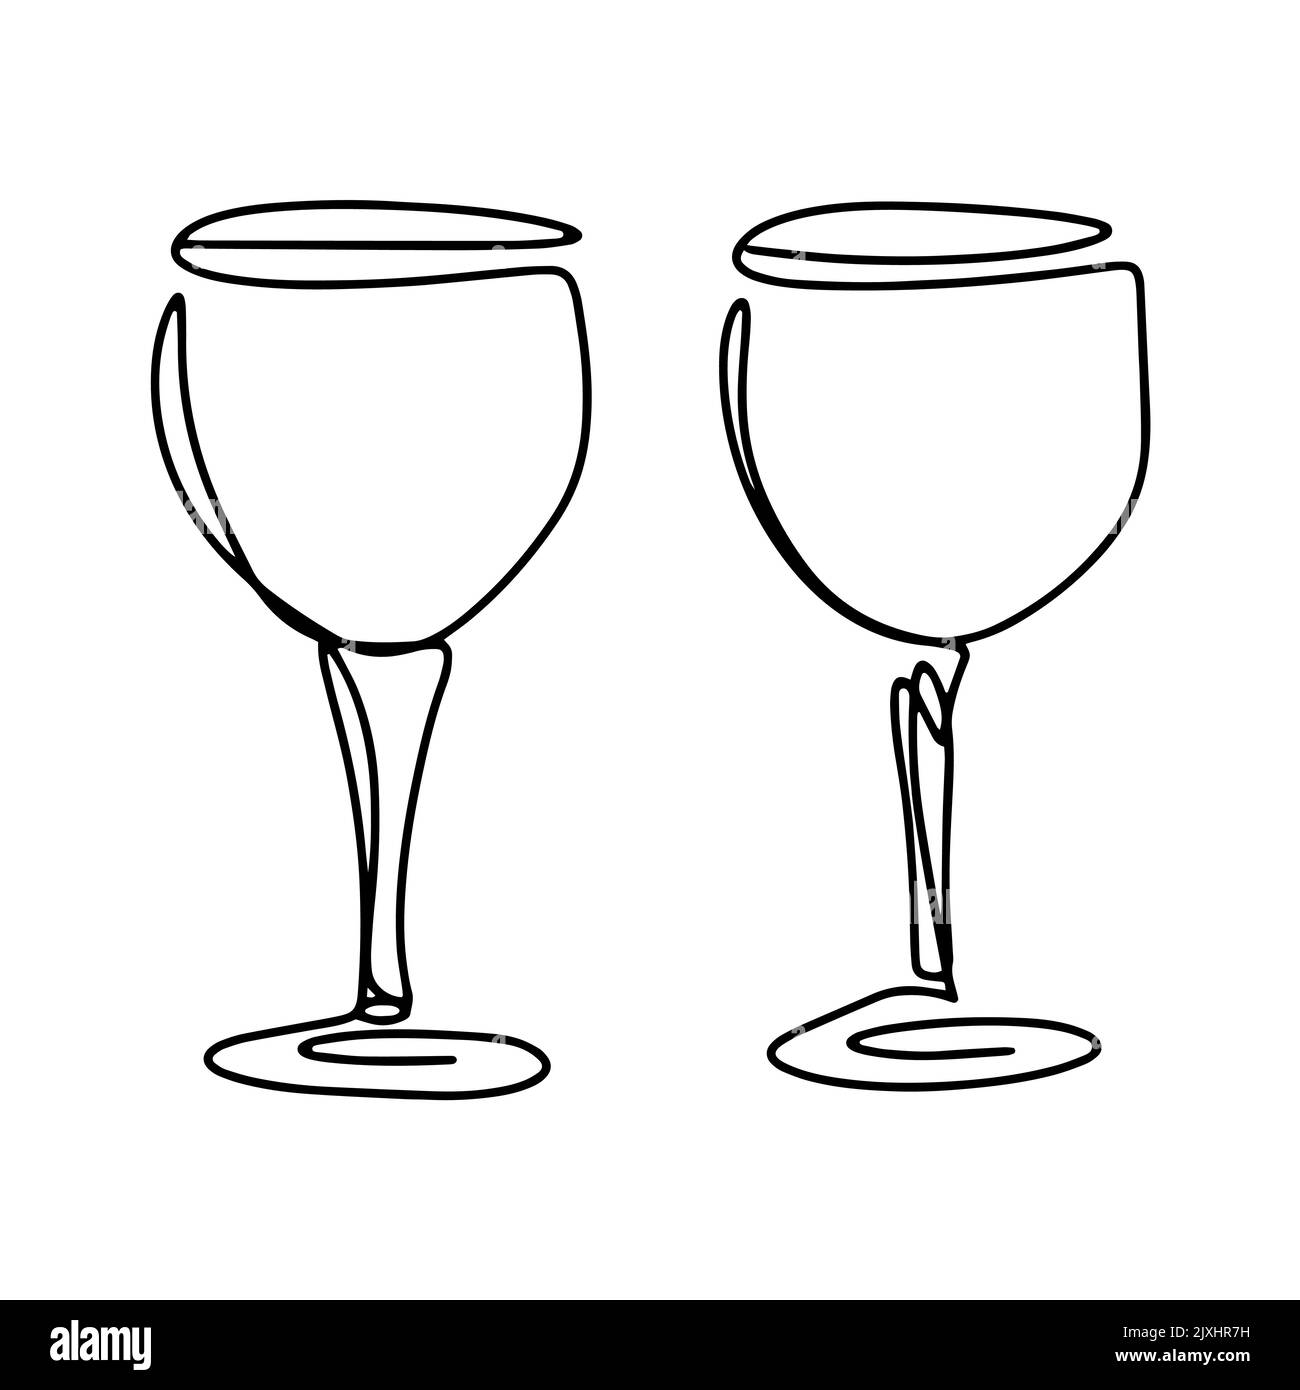 Coppia di bicchieri da vino linea isolata vettore arte. Bicchieri sulle gambe per bevande alcoliche. Utensili per bere contorno nero su sfondo bianco Illustrazione Vettoriale